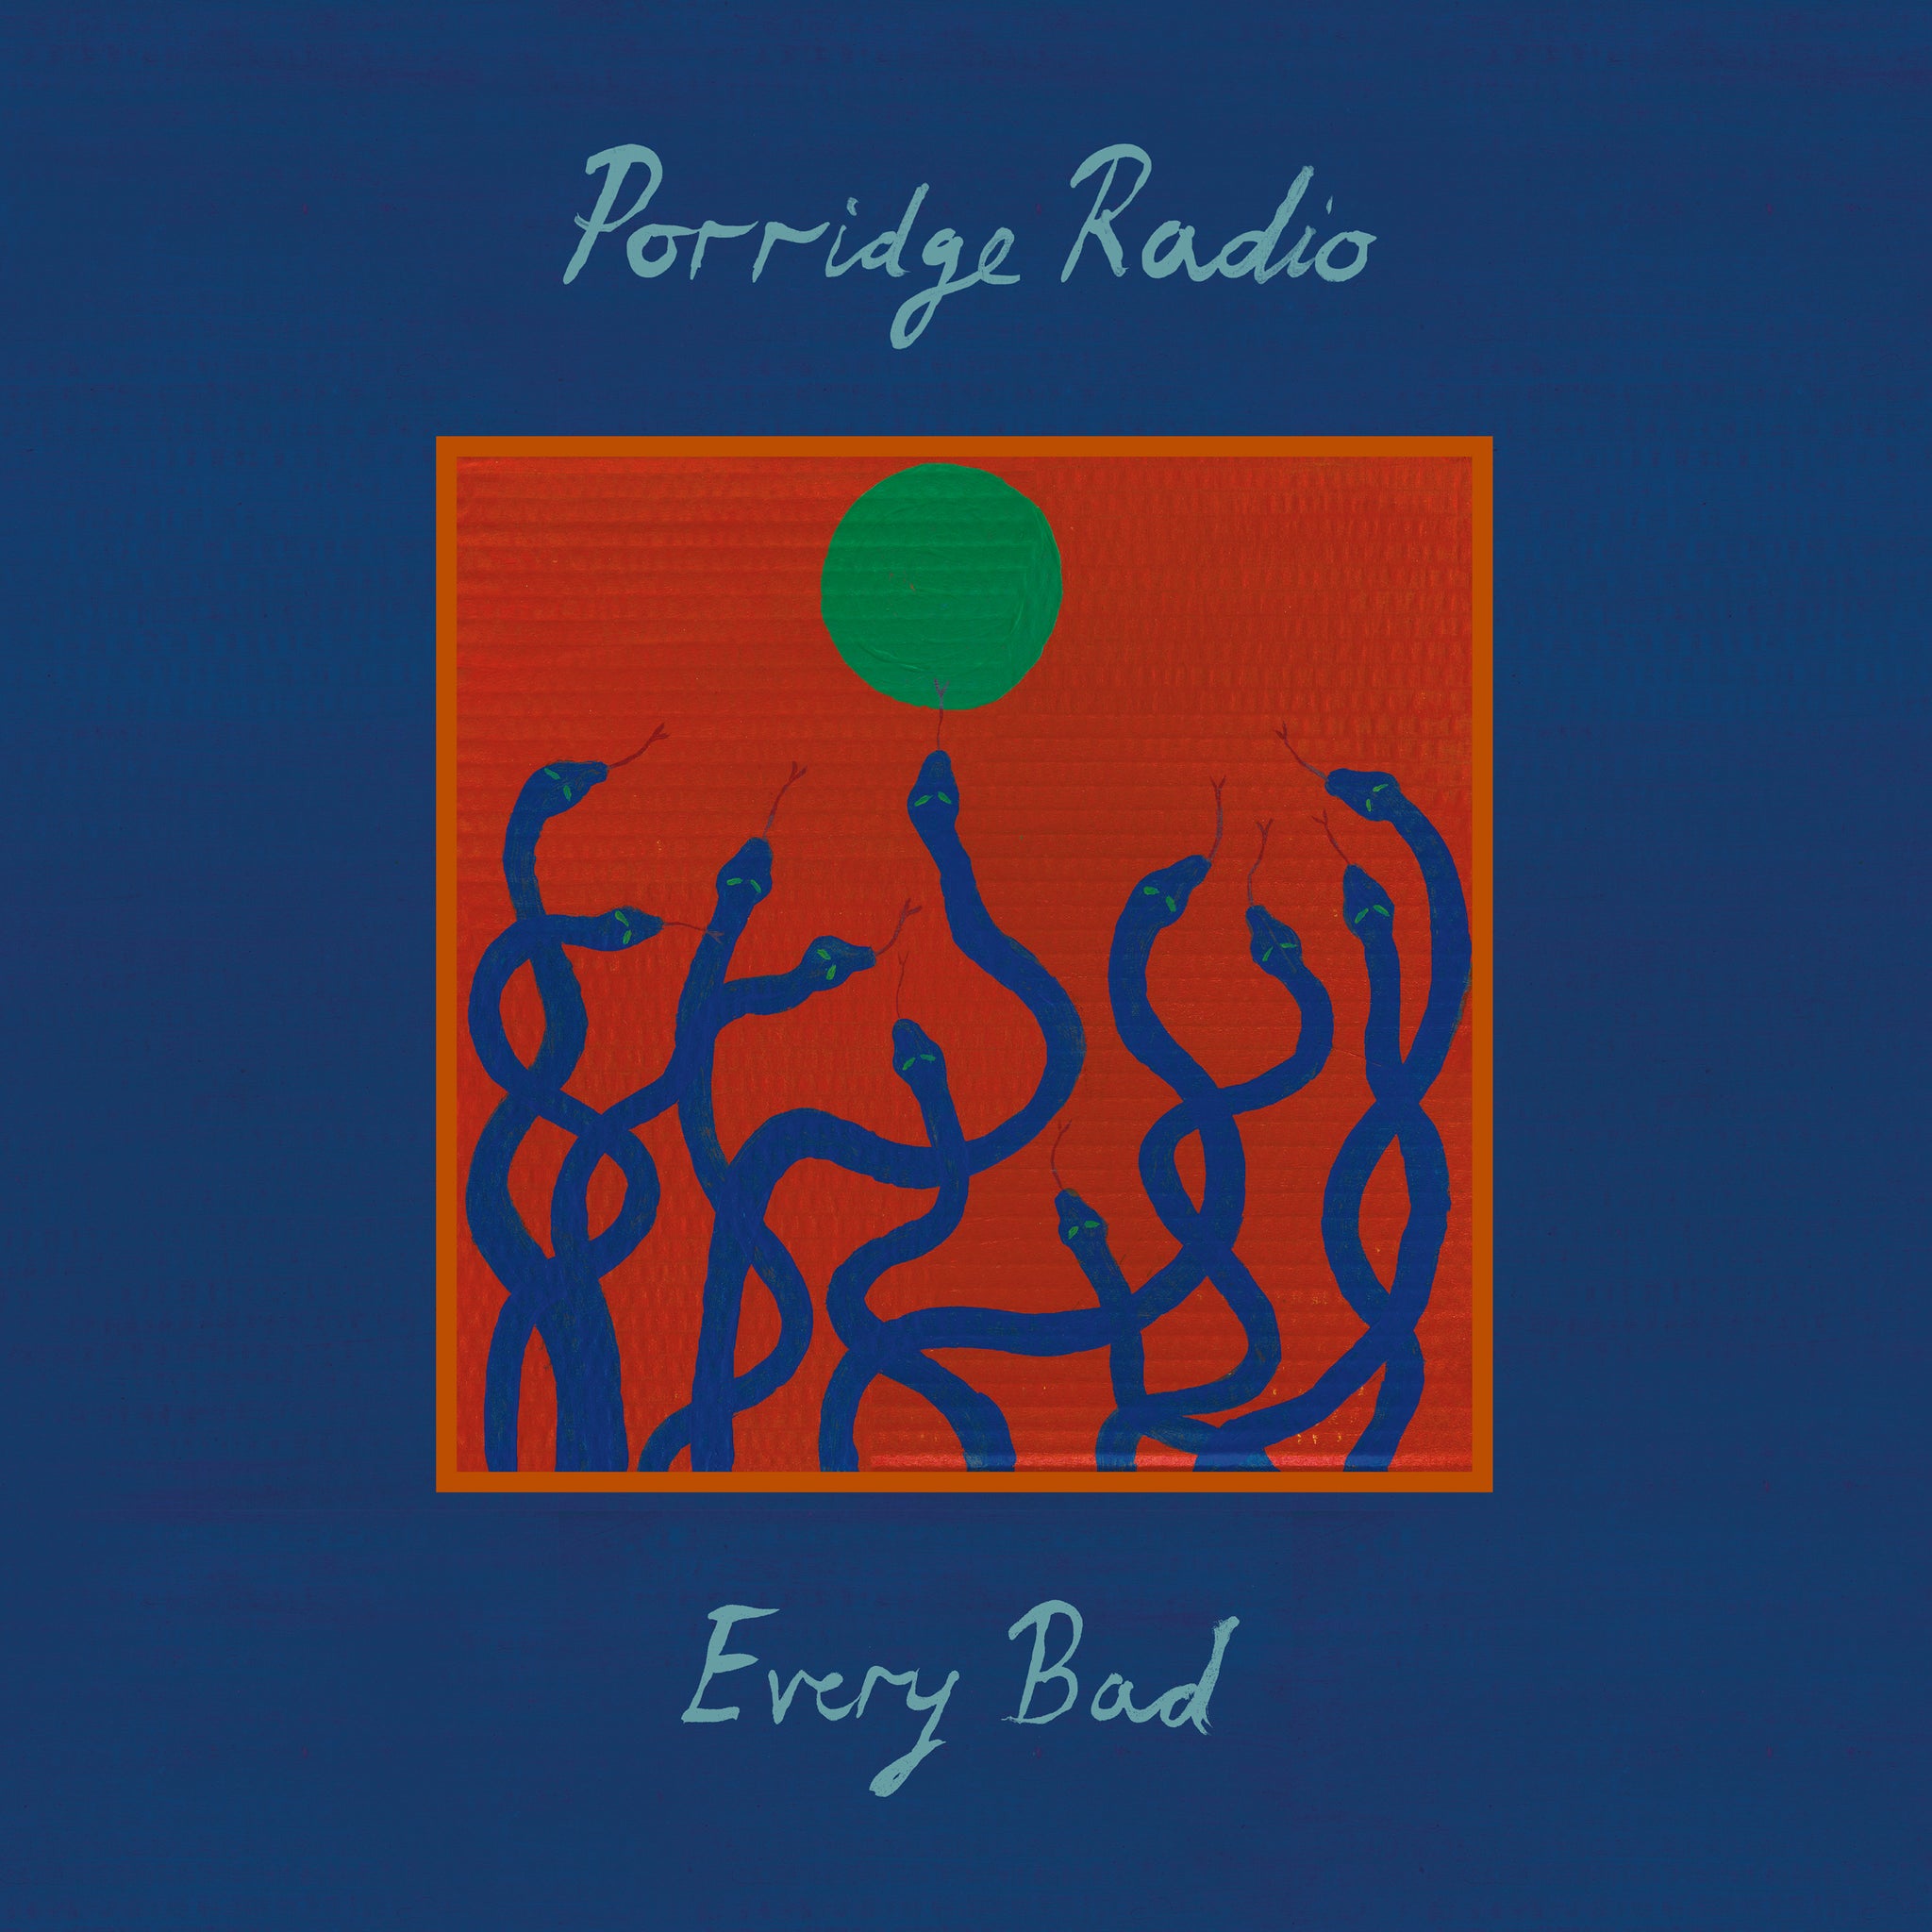 PORRIDGE RADIO - EVERY BAD (DELUXE EDITION) Vinyl 2xLP